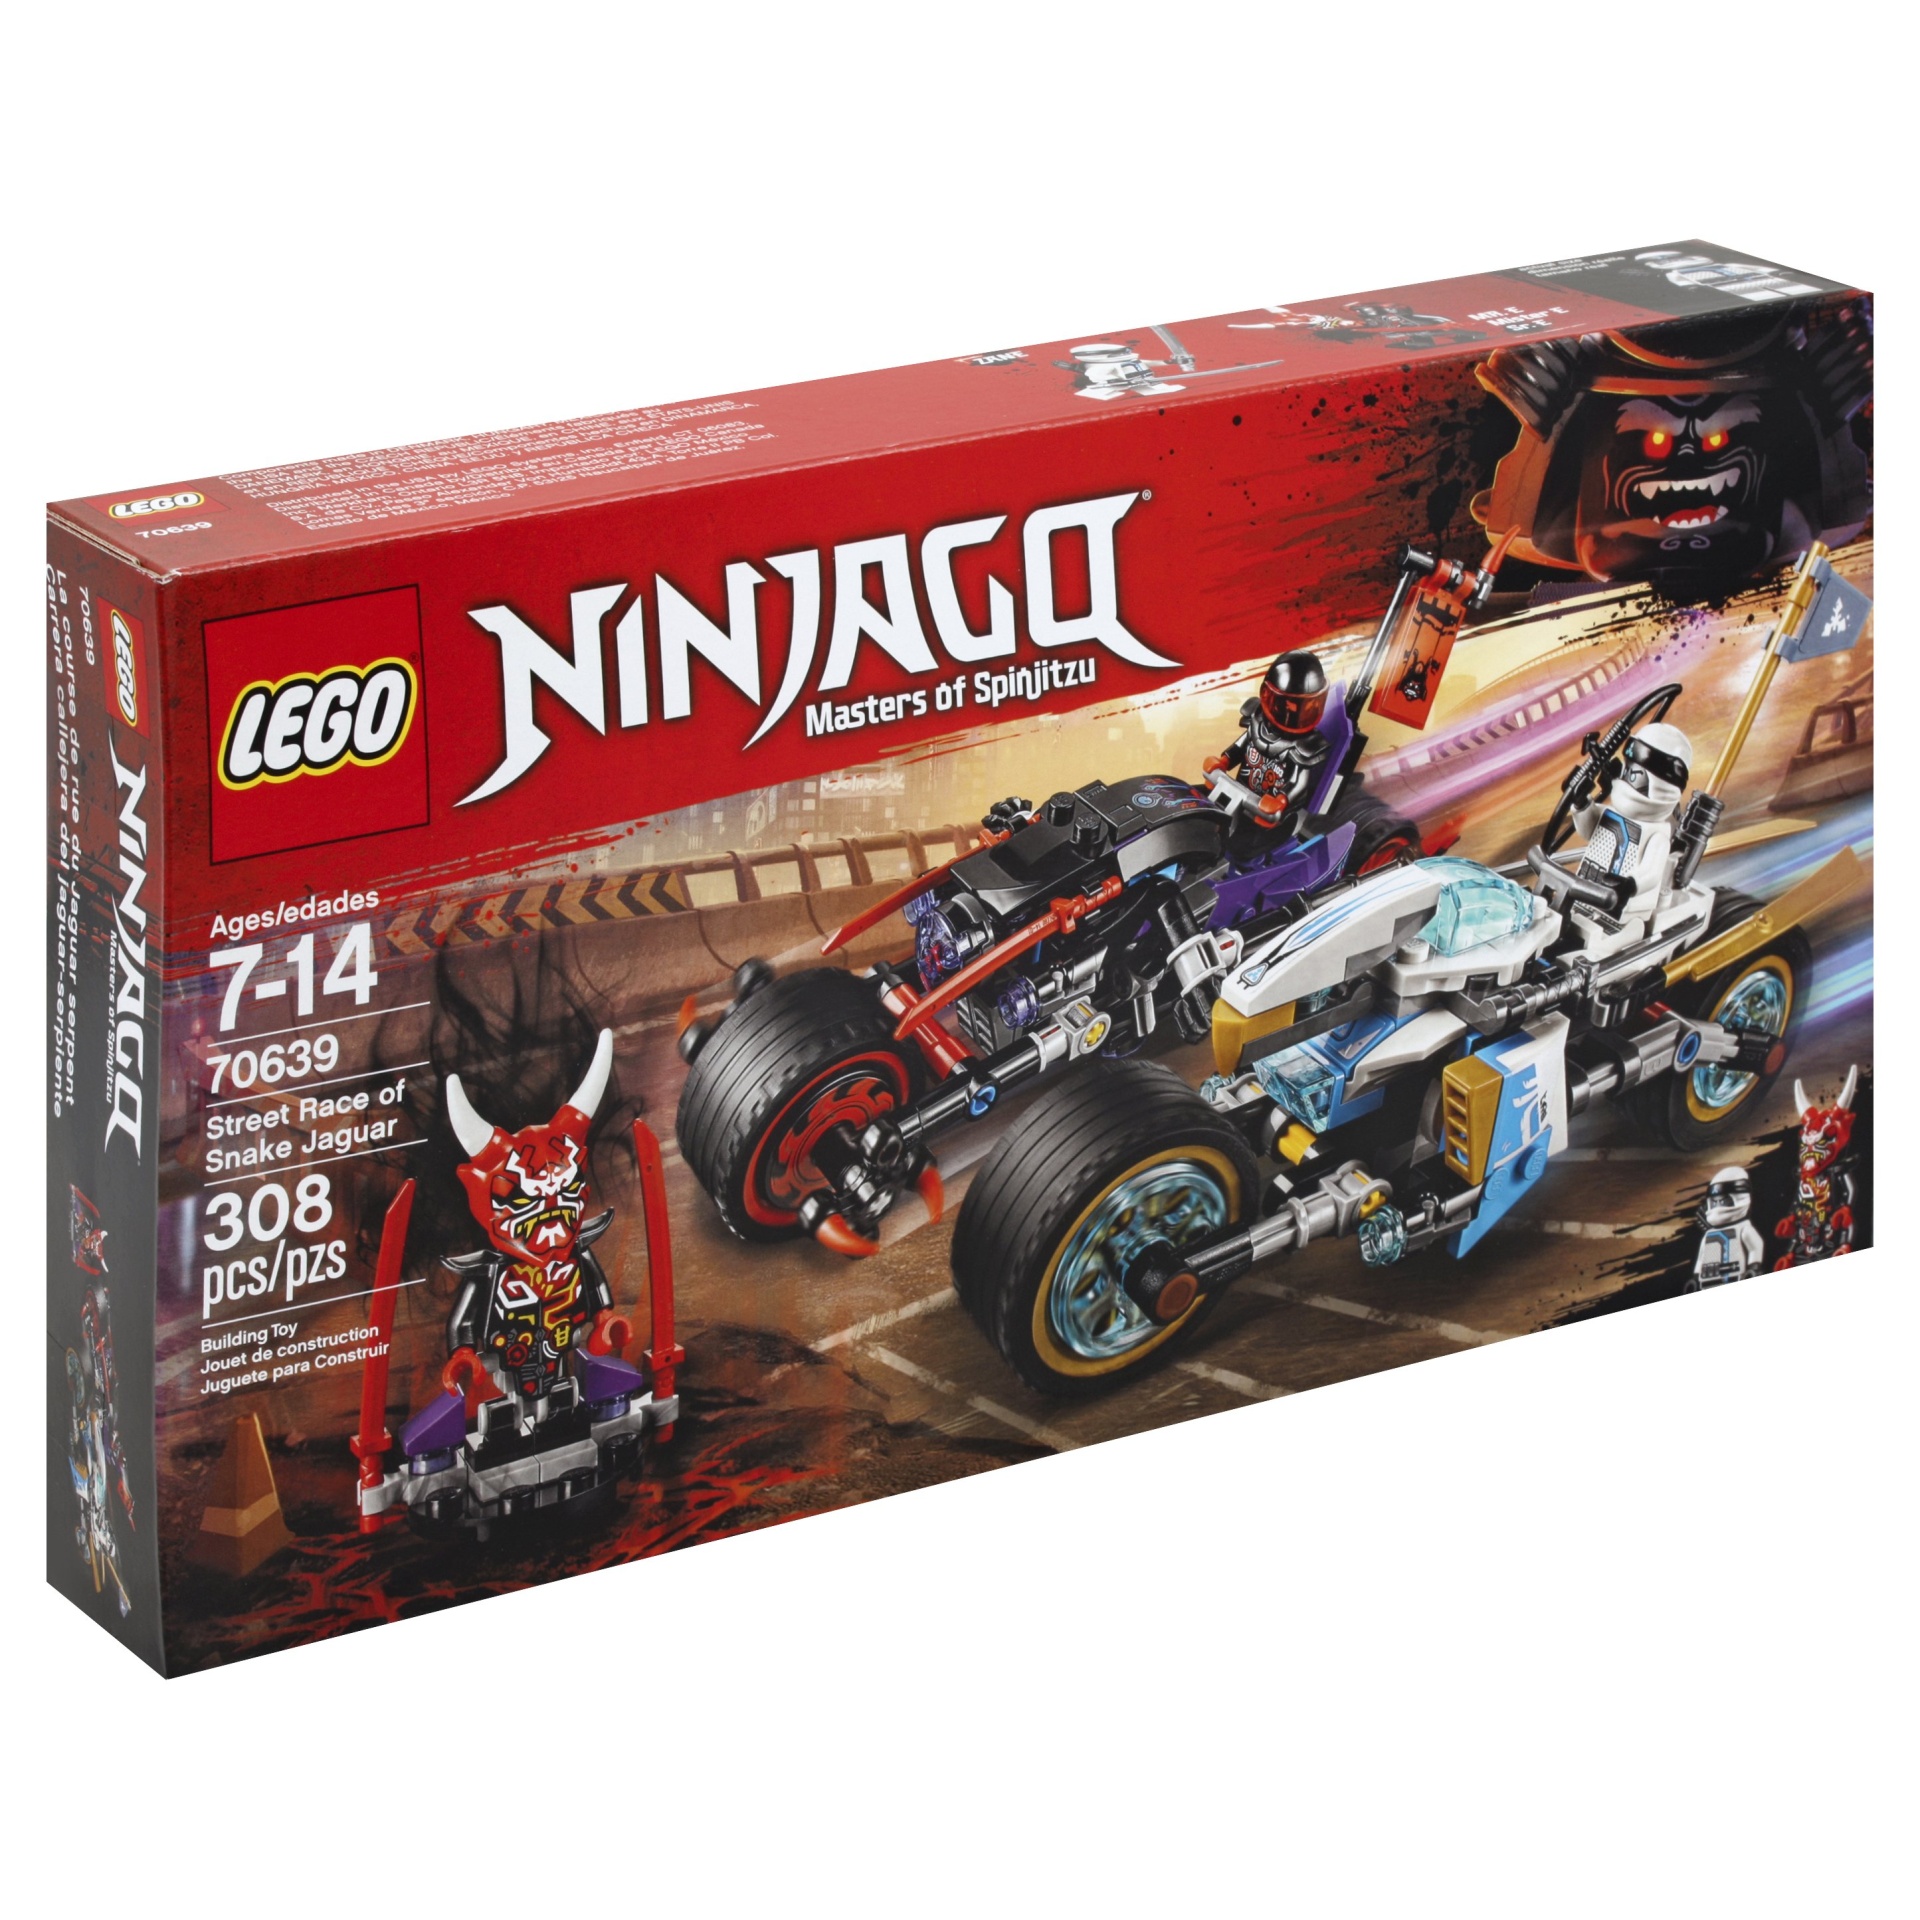 slide 1 of 1, LEGO Ninjago Street Race of Snake Jaguar 70639, 1 ct